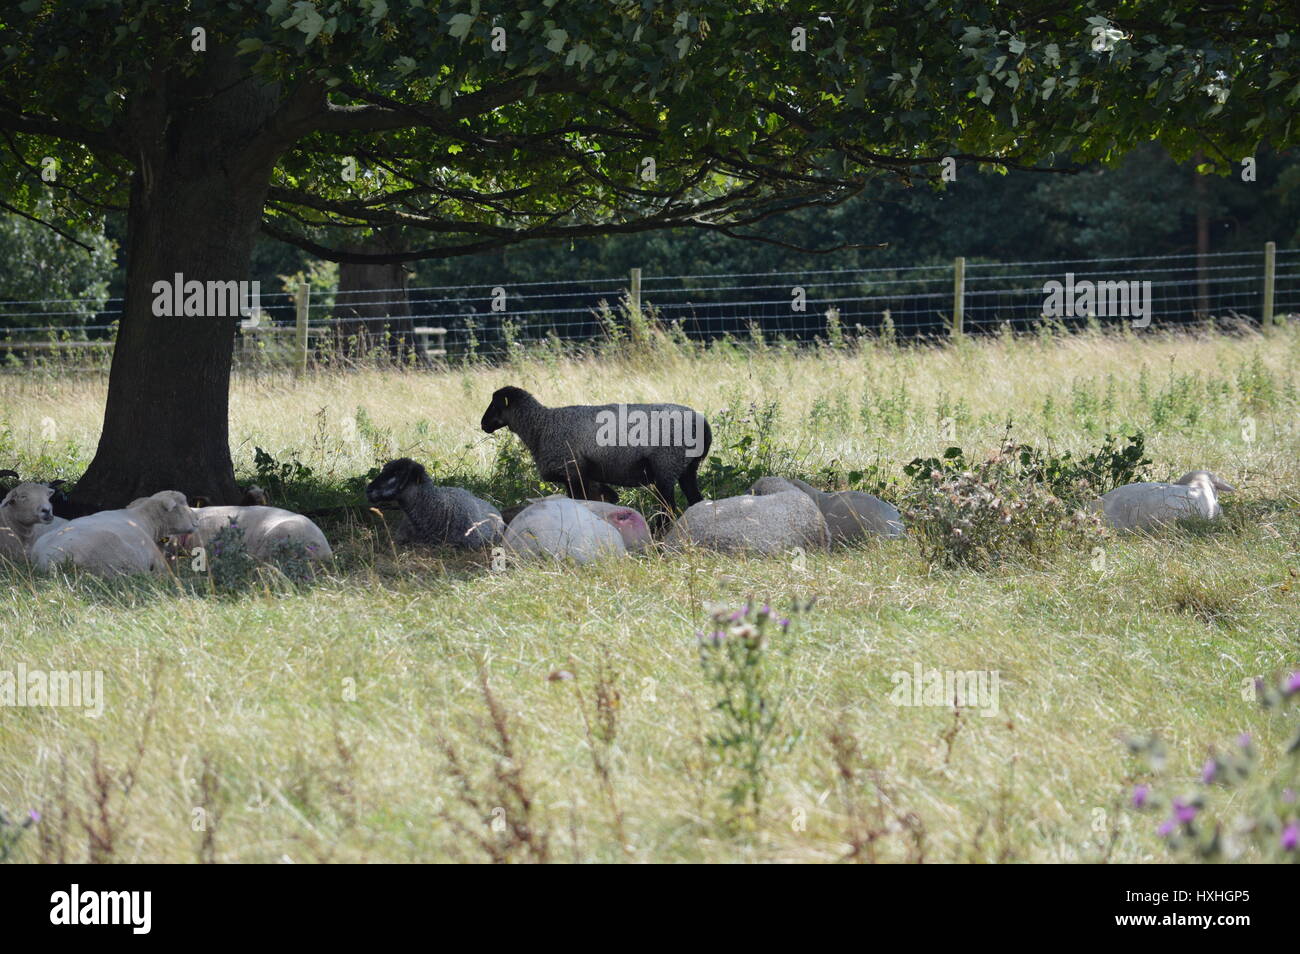 Un mouton debout avec des moutons à dormir l'entourent dans un champ sous un arbre Banque D'Images